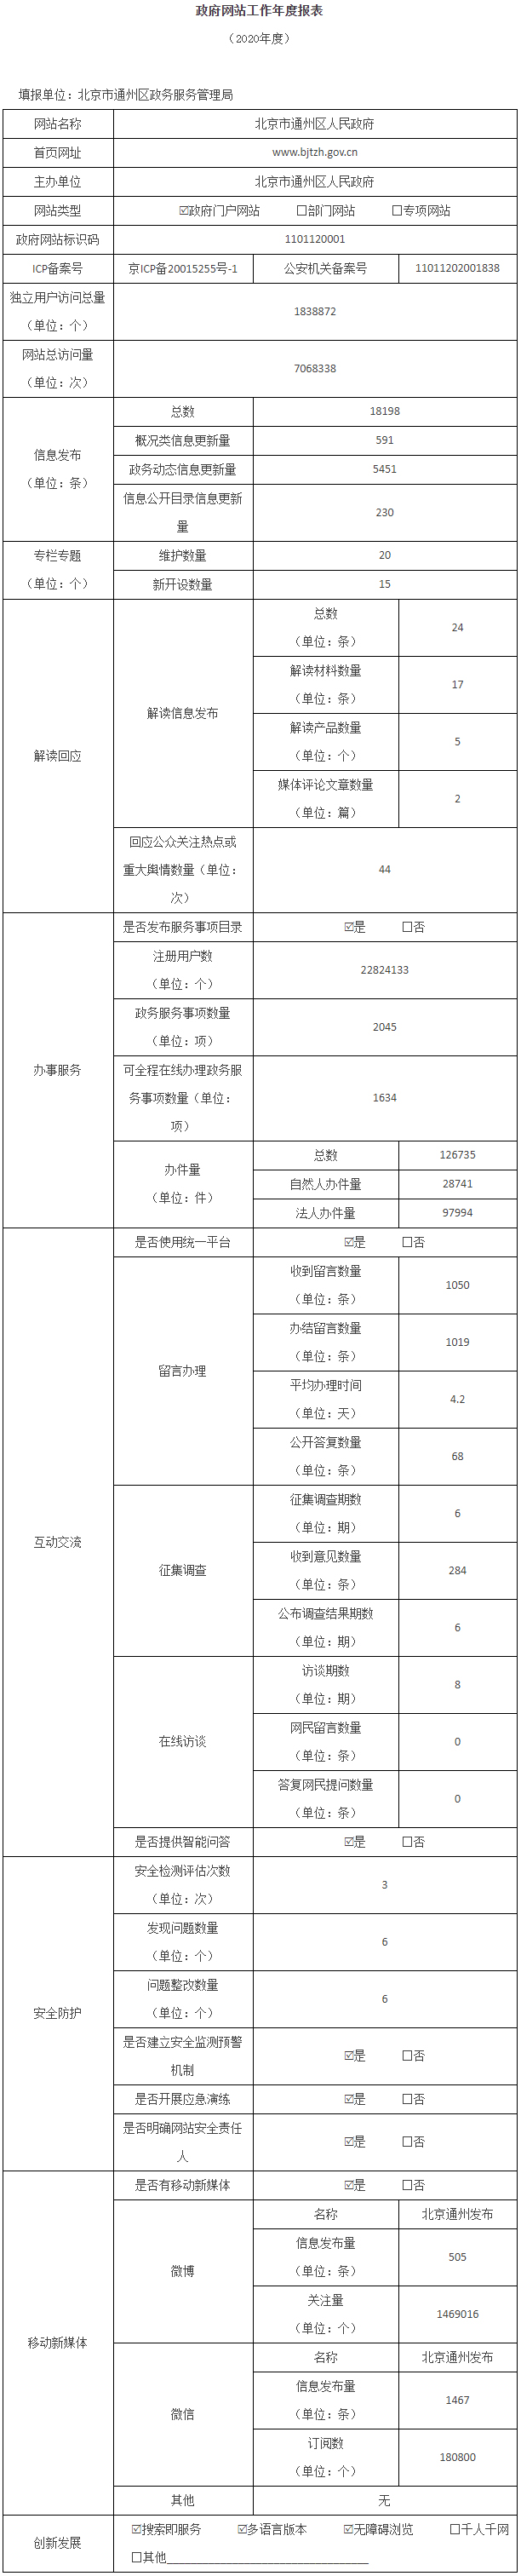 北京市通州区人民政府2020年政府网站年度工作报表